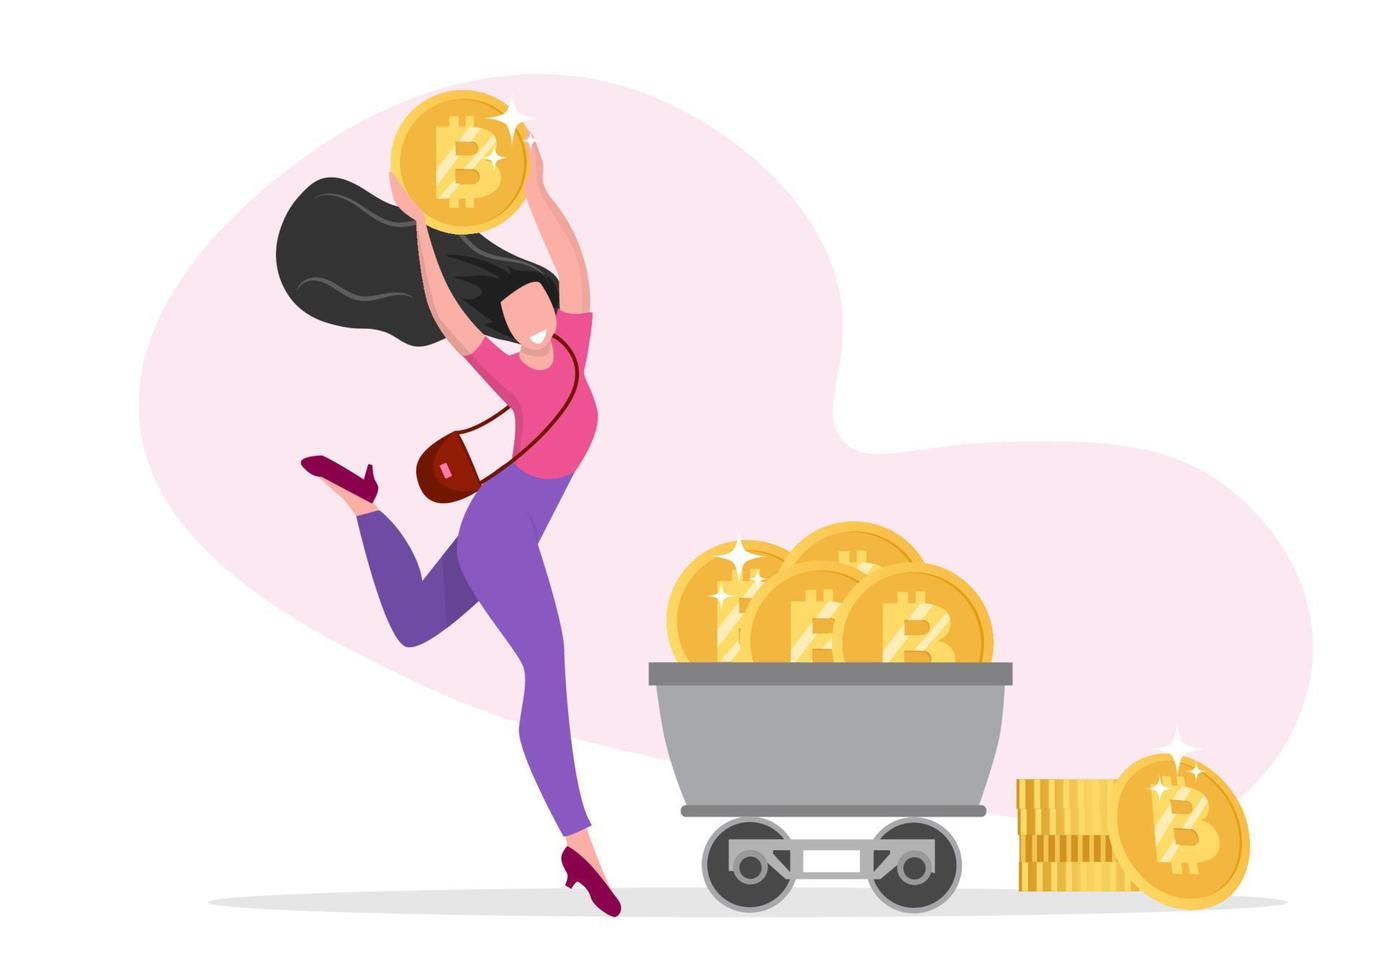 personagens femininas com símbolos de felicidade, riqueza de bitcoin, tema de moeda criptográfica. vetor de ilustração dos desenhos animados estilo simples.